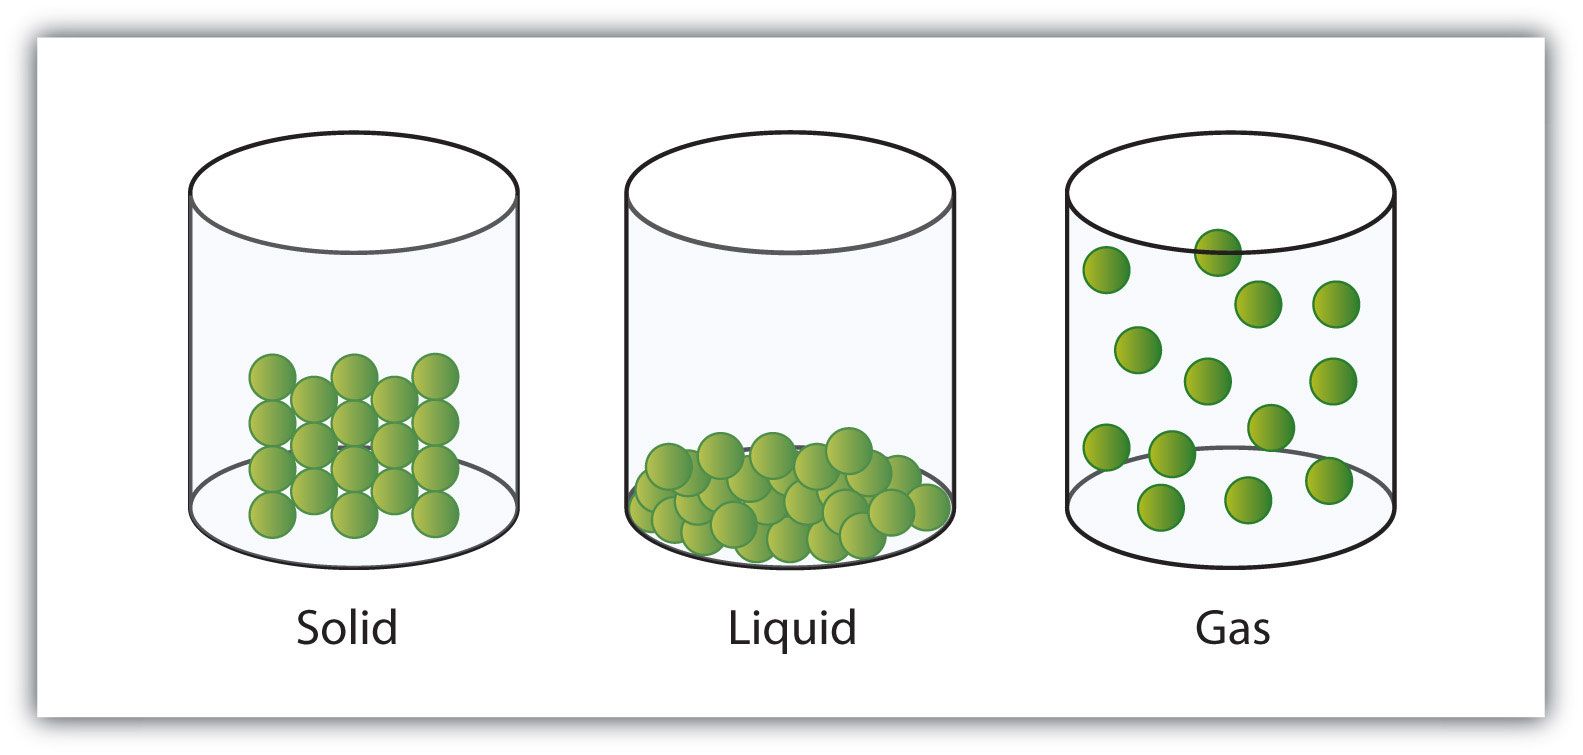 solids liquids and gases - Class 7 - Quizizz